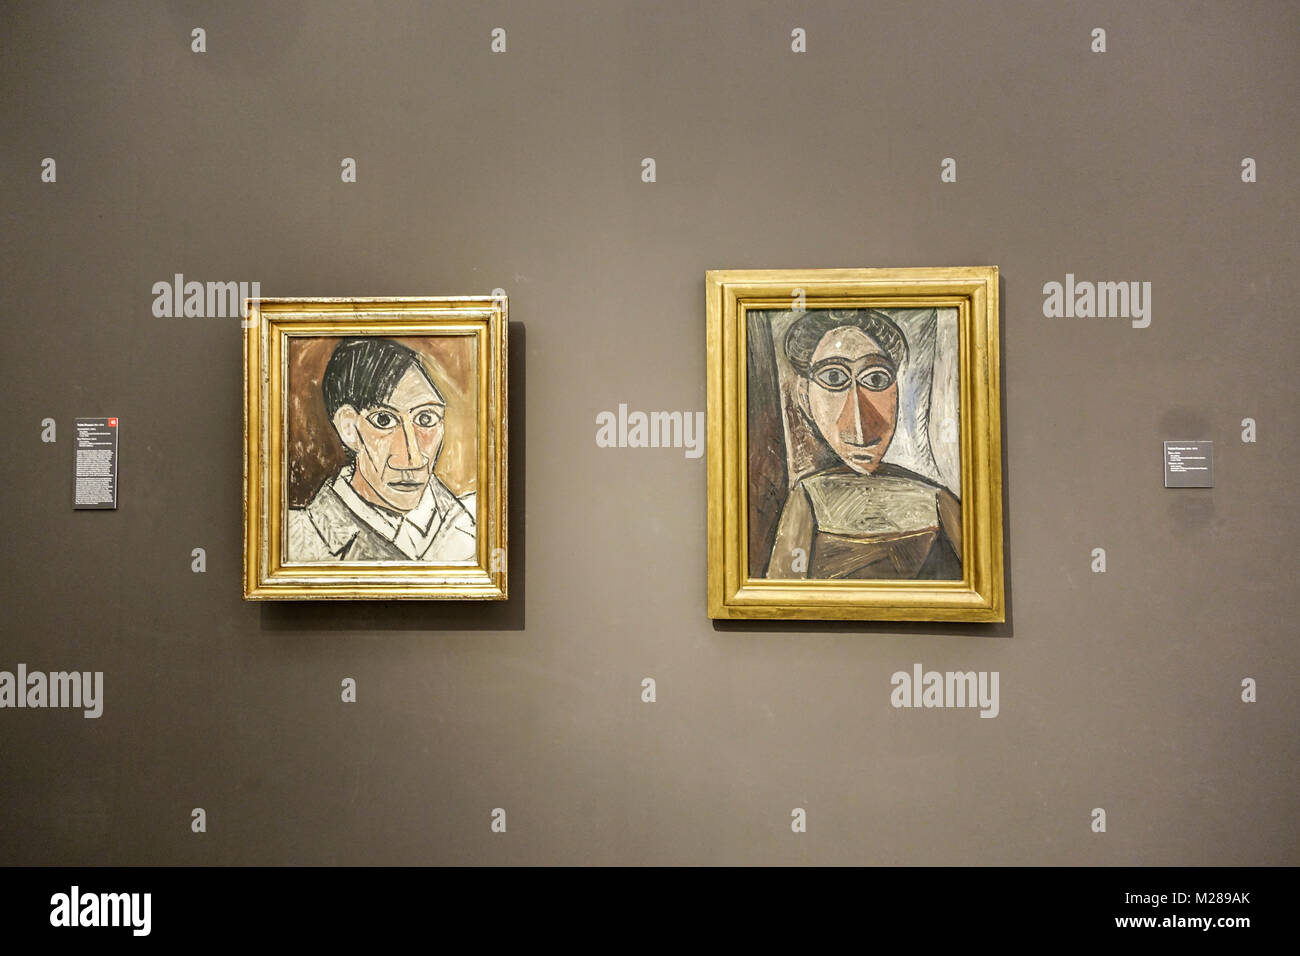 Célèbre Pablo Picasso autoportrait (à gauche) Veletrzni palac, Galerie nationale, Prague République tchèque Portrait Picasso Banque D'Images